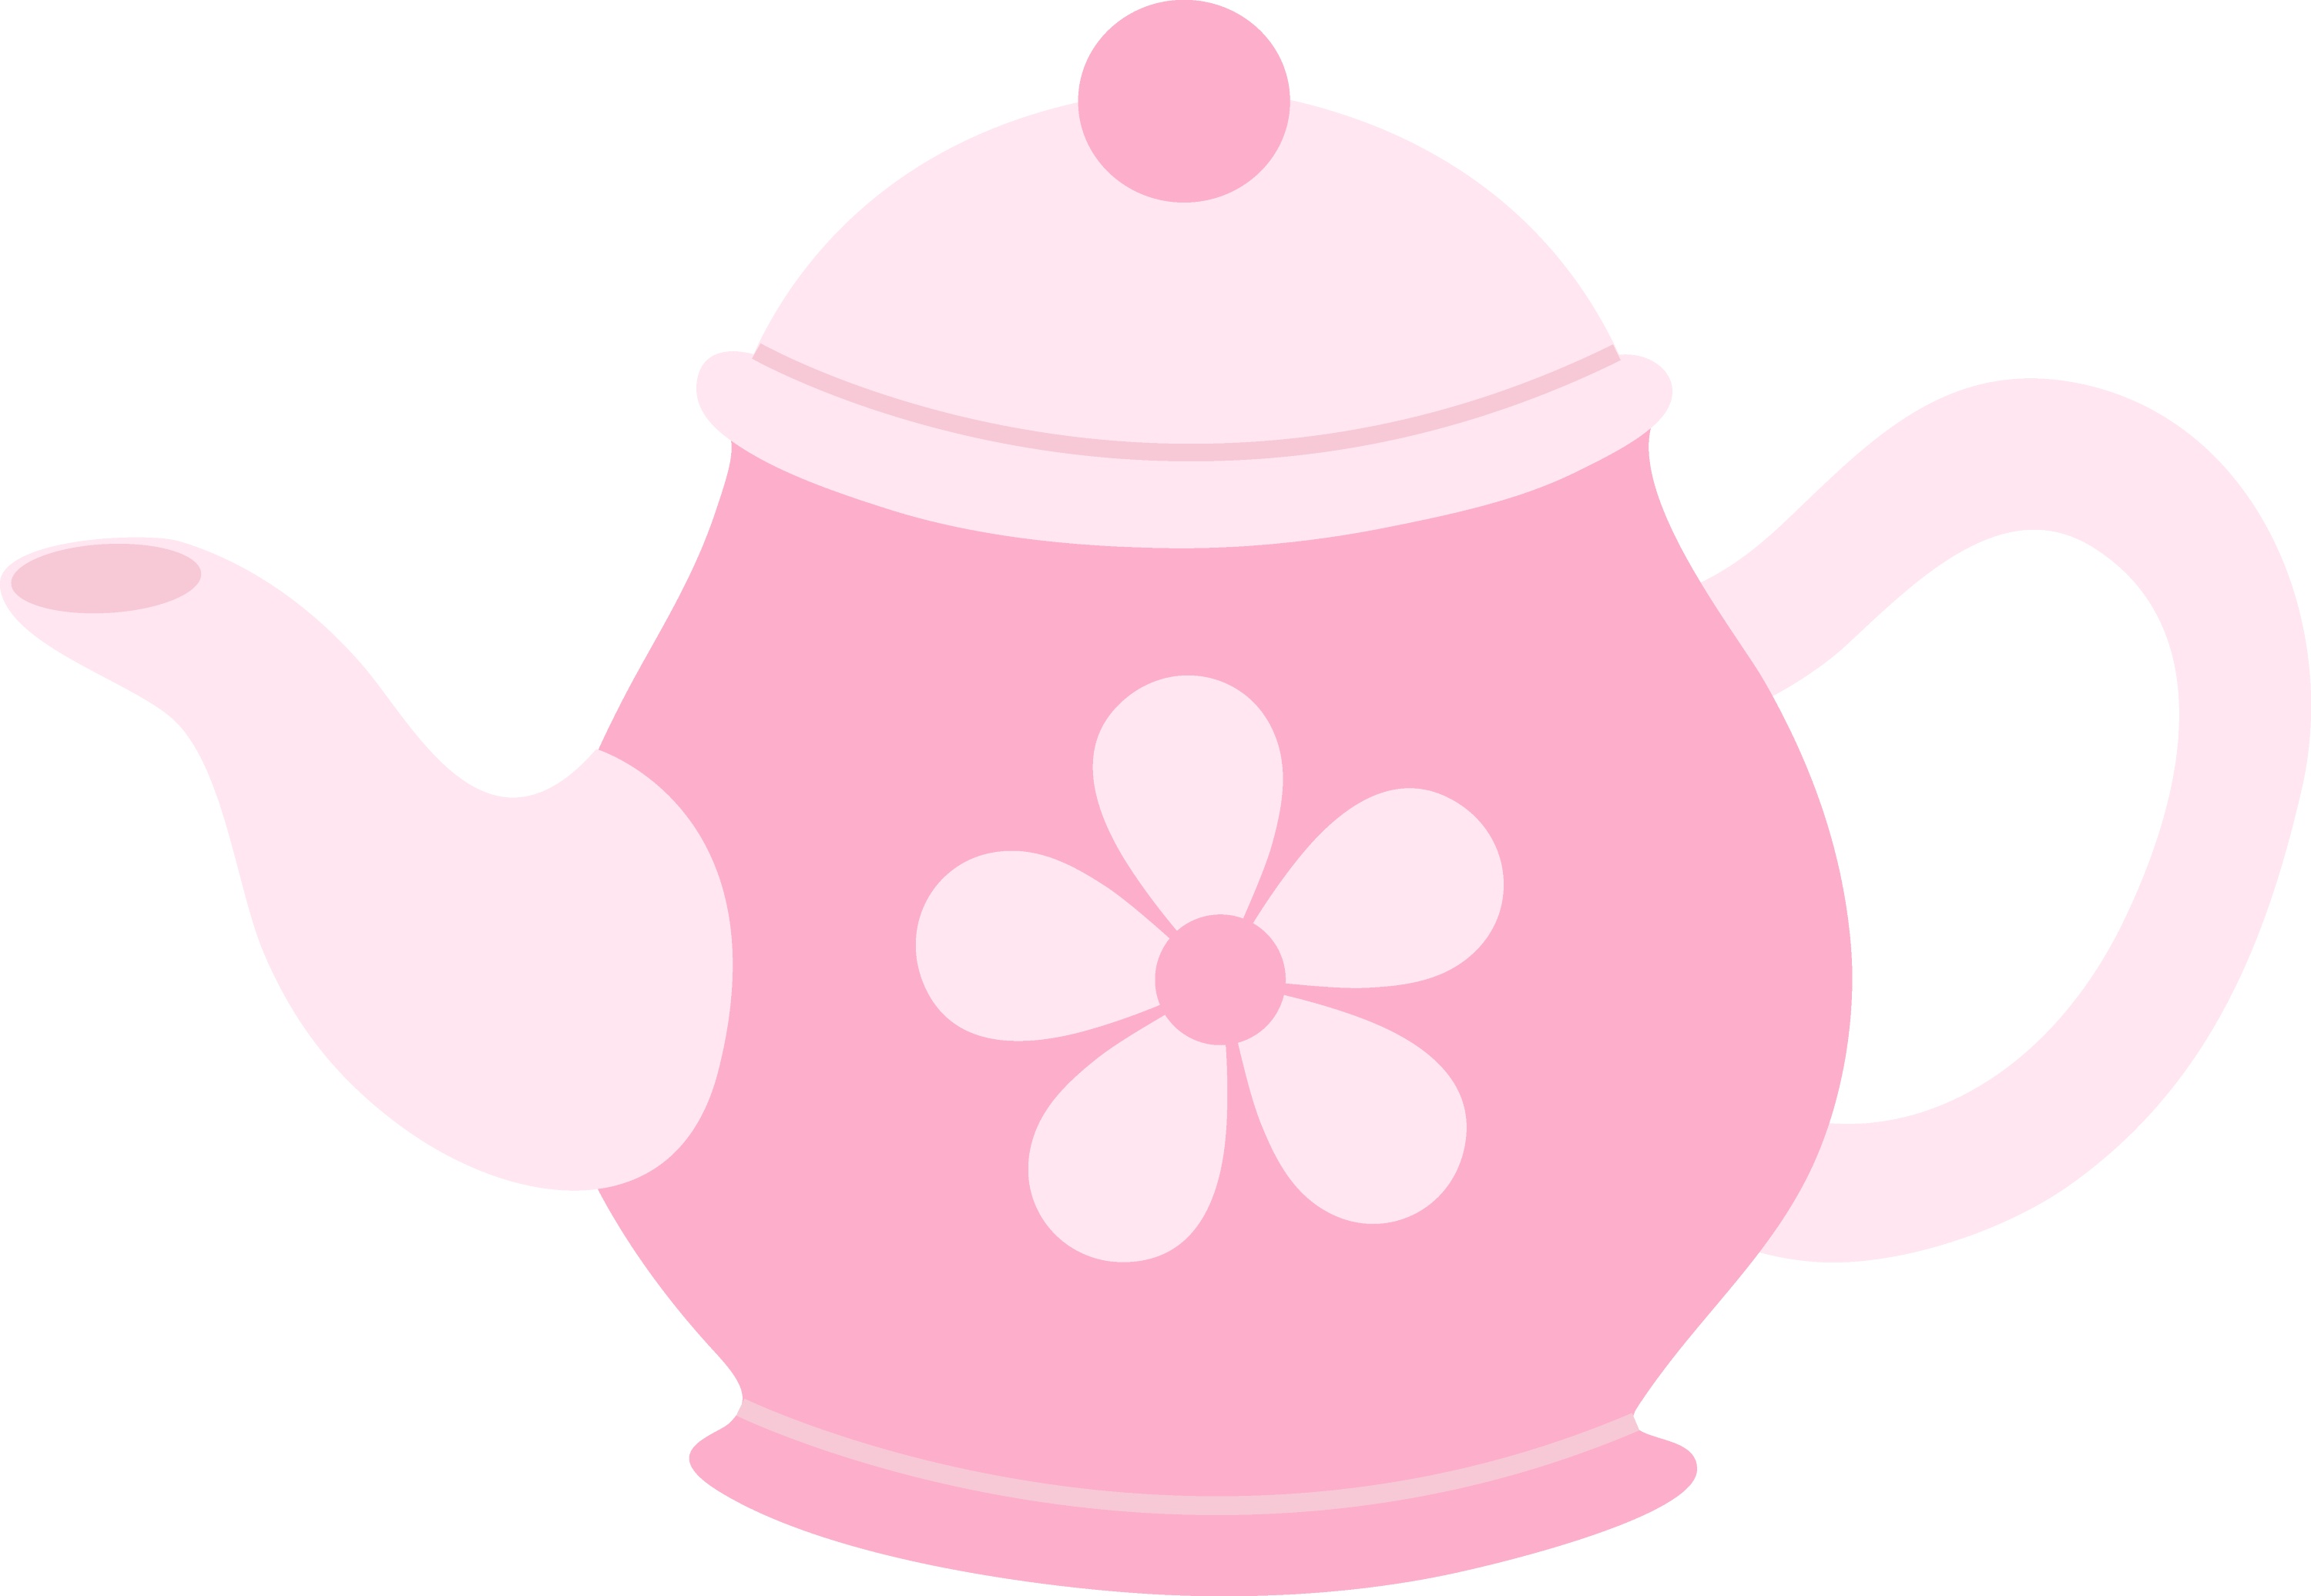 clipart teapot images - photo #23